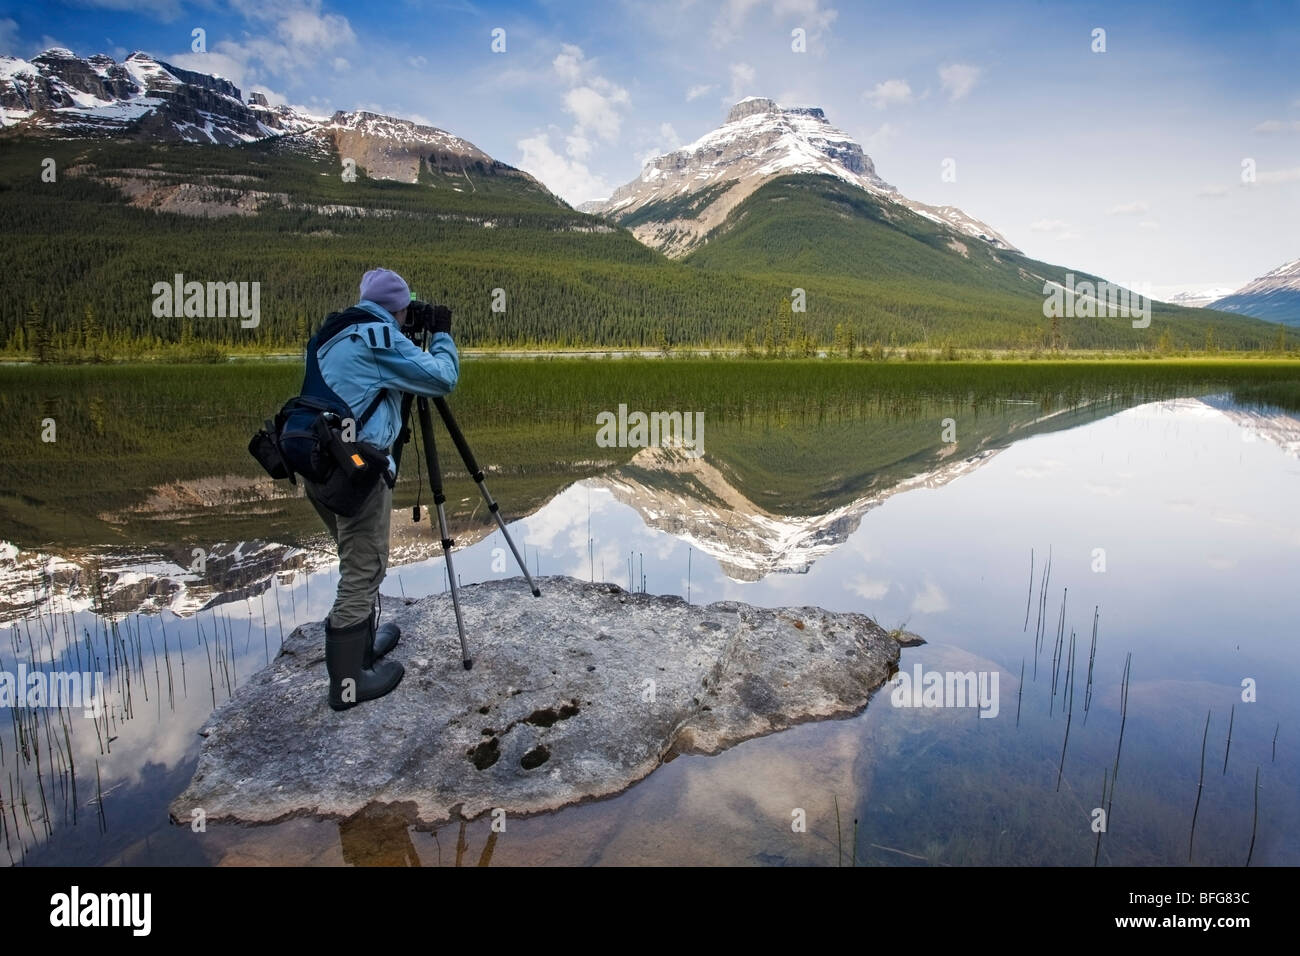 Un photographe met en place un matin à Rampart photo paysage d'étangs, dans le parc national Banff, Alberta, Canada Banque D'Images